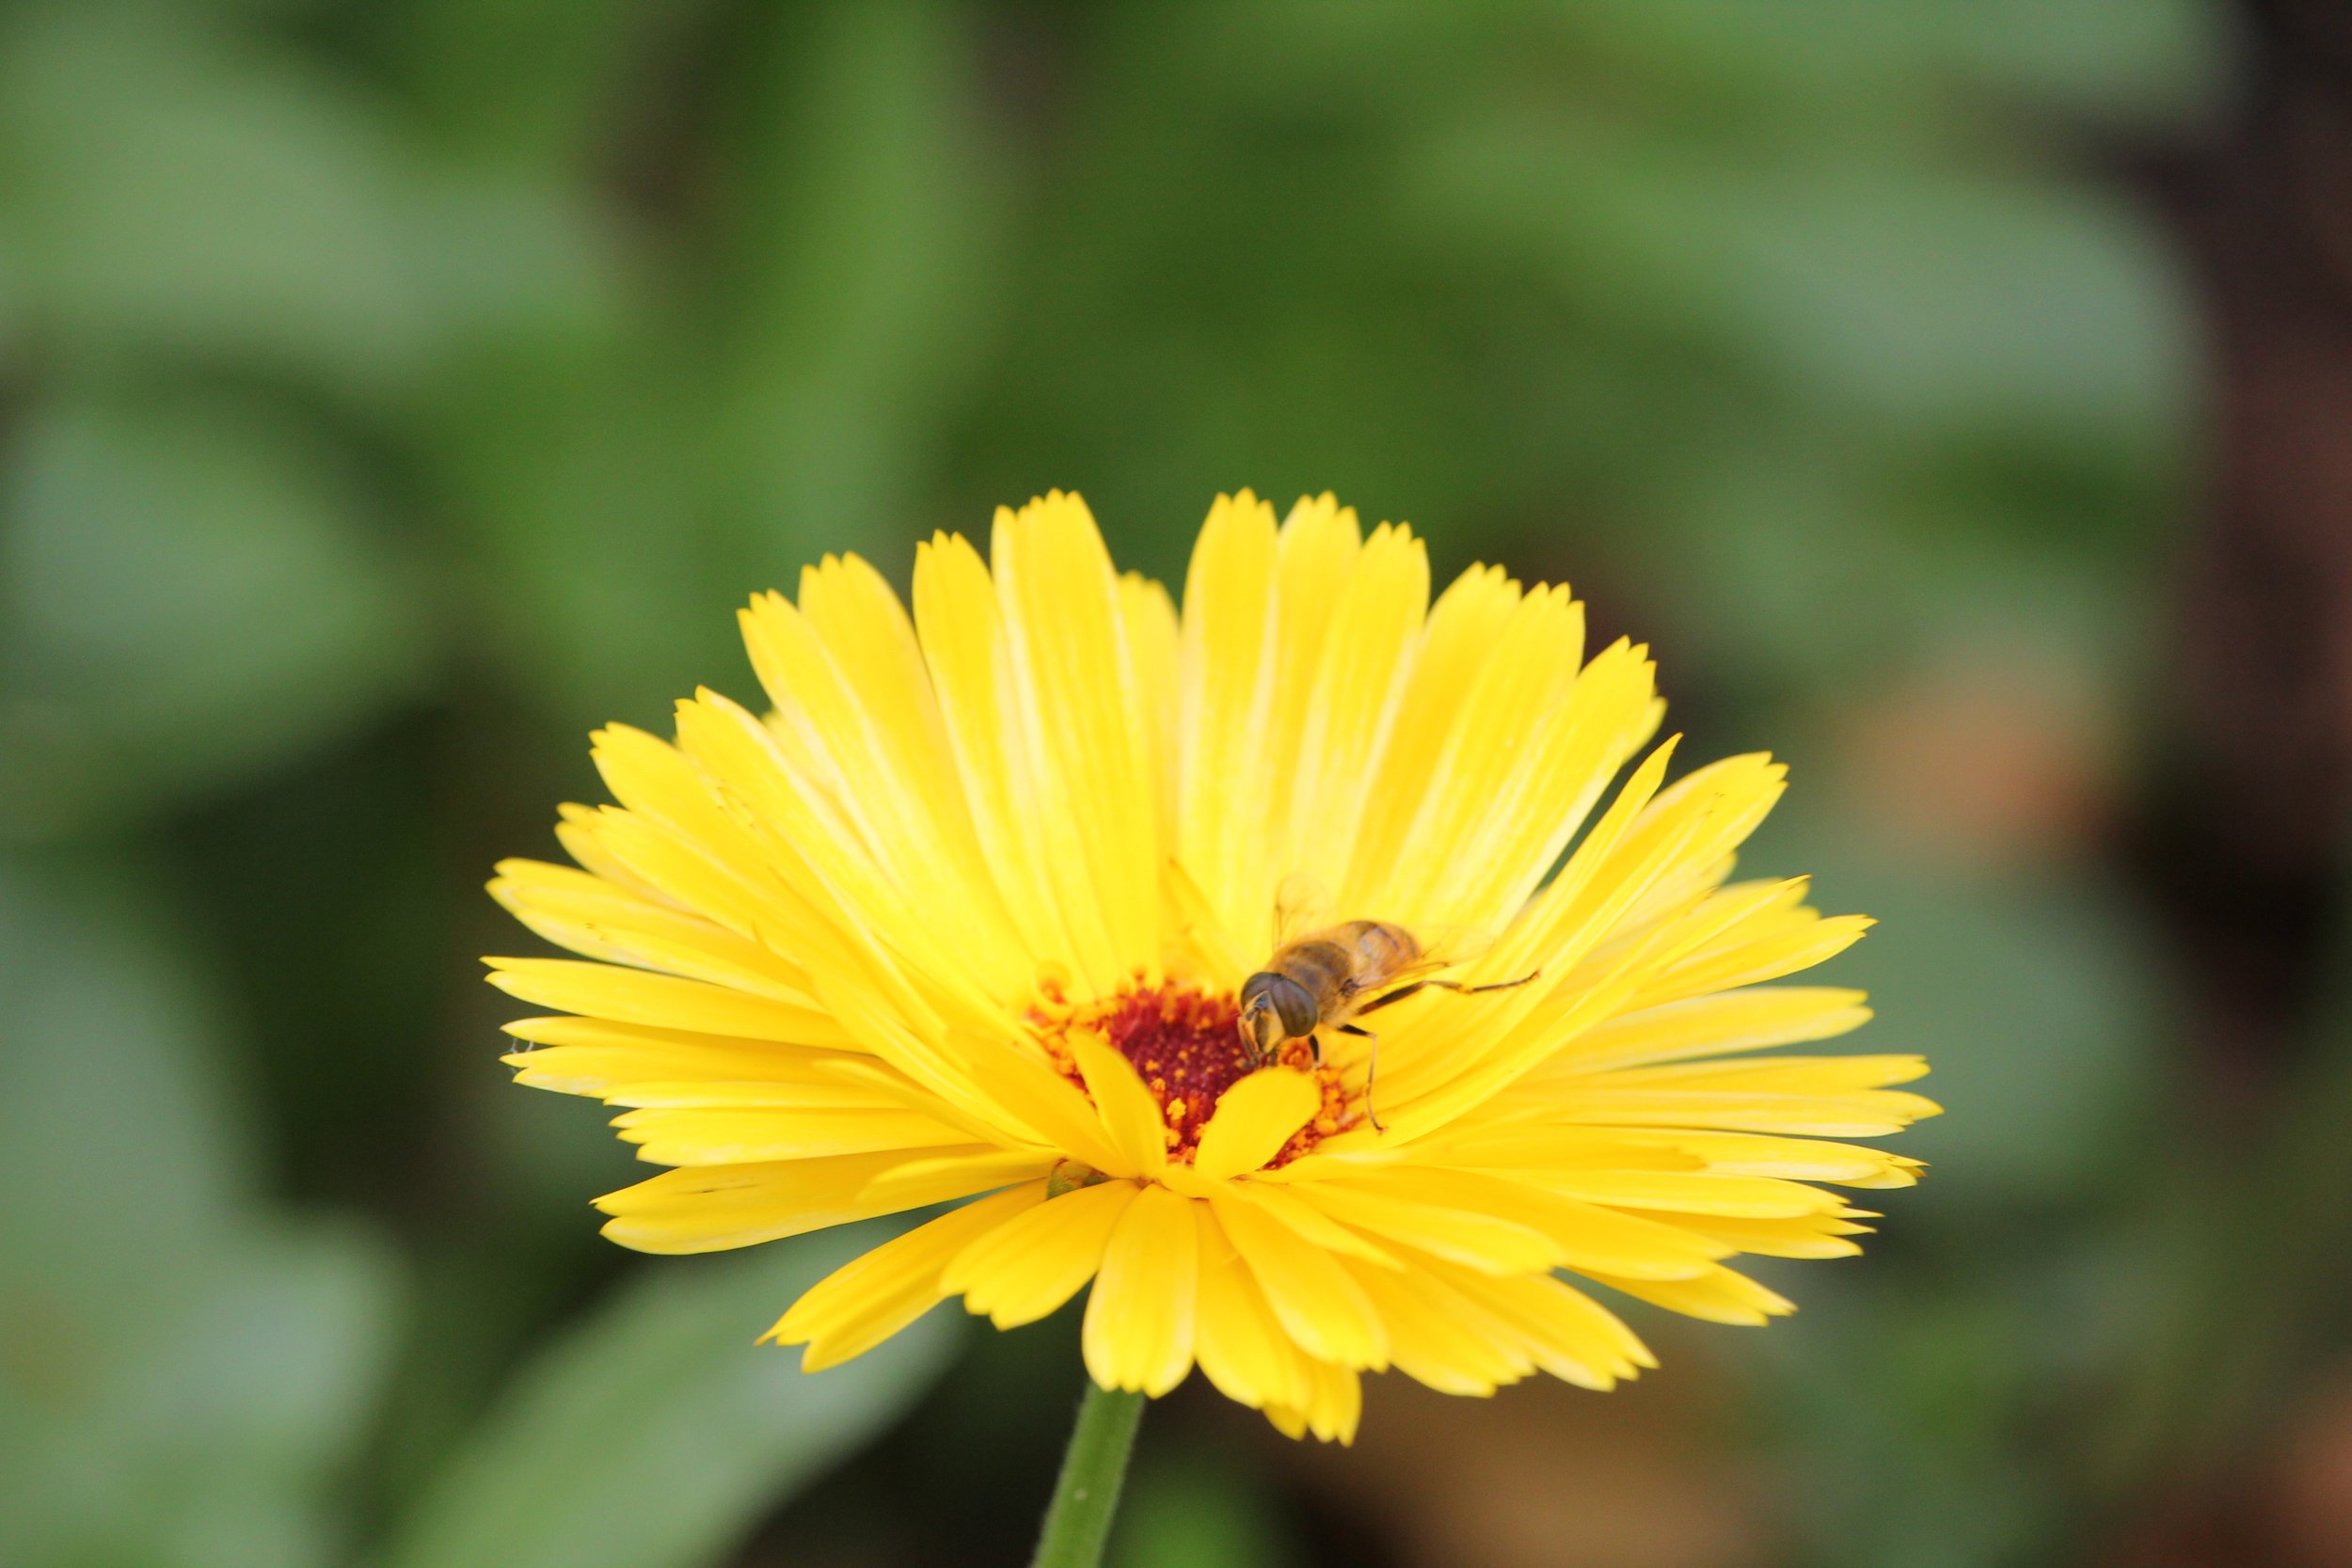 Shaun Phillips, Bee on Yellow Flower